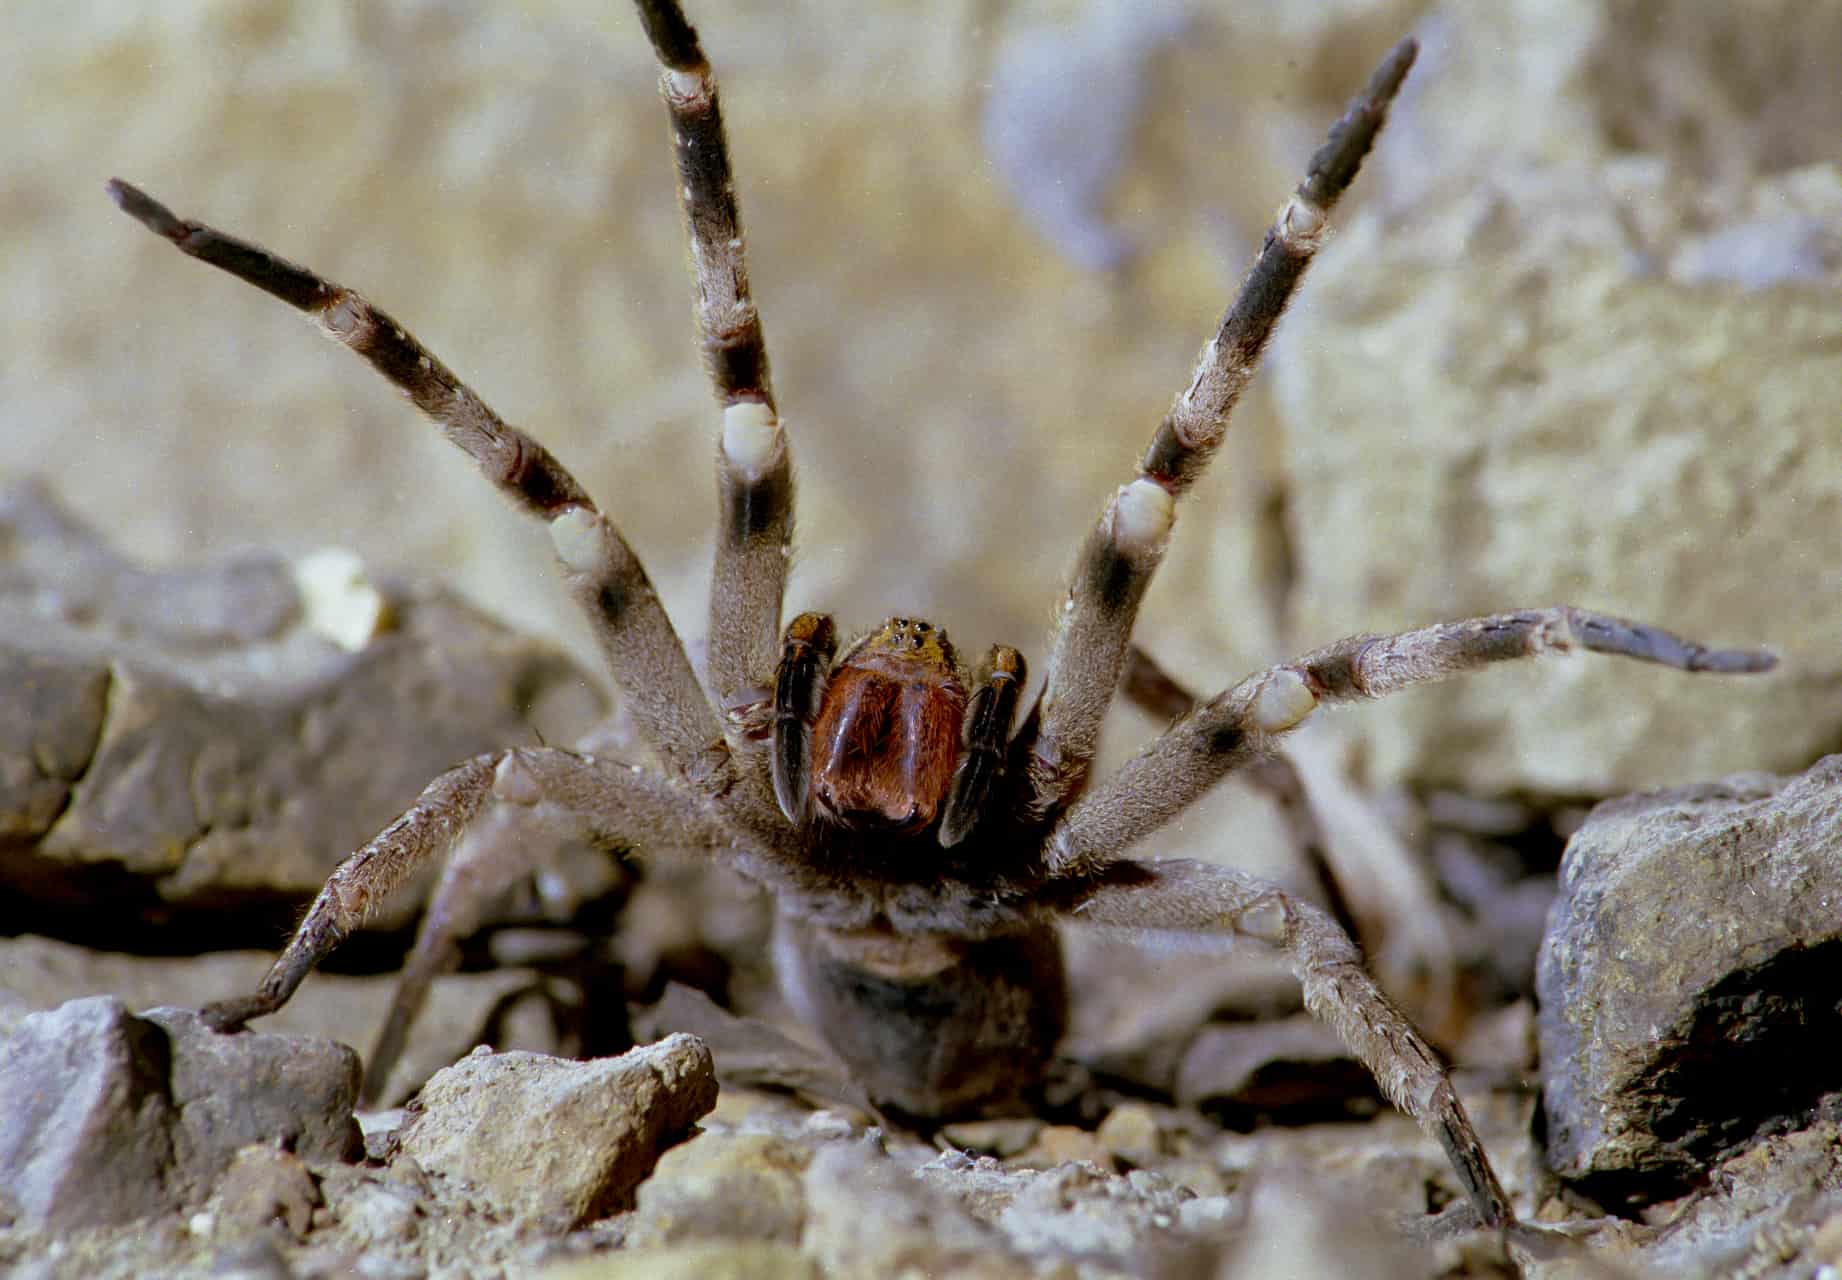 32. Brazilian Wandering Spider.